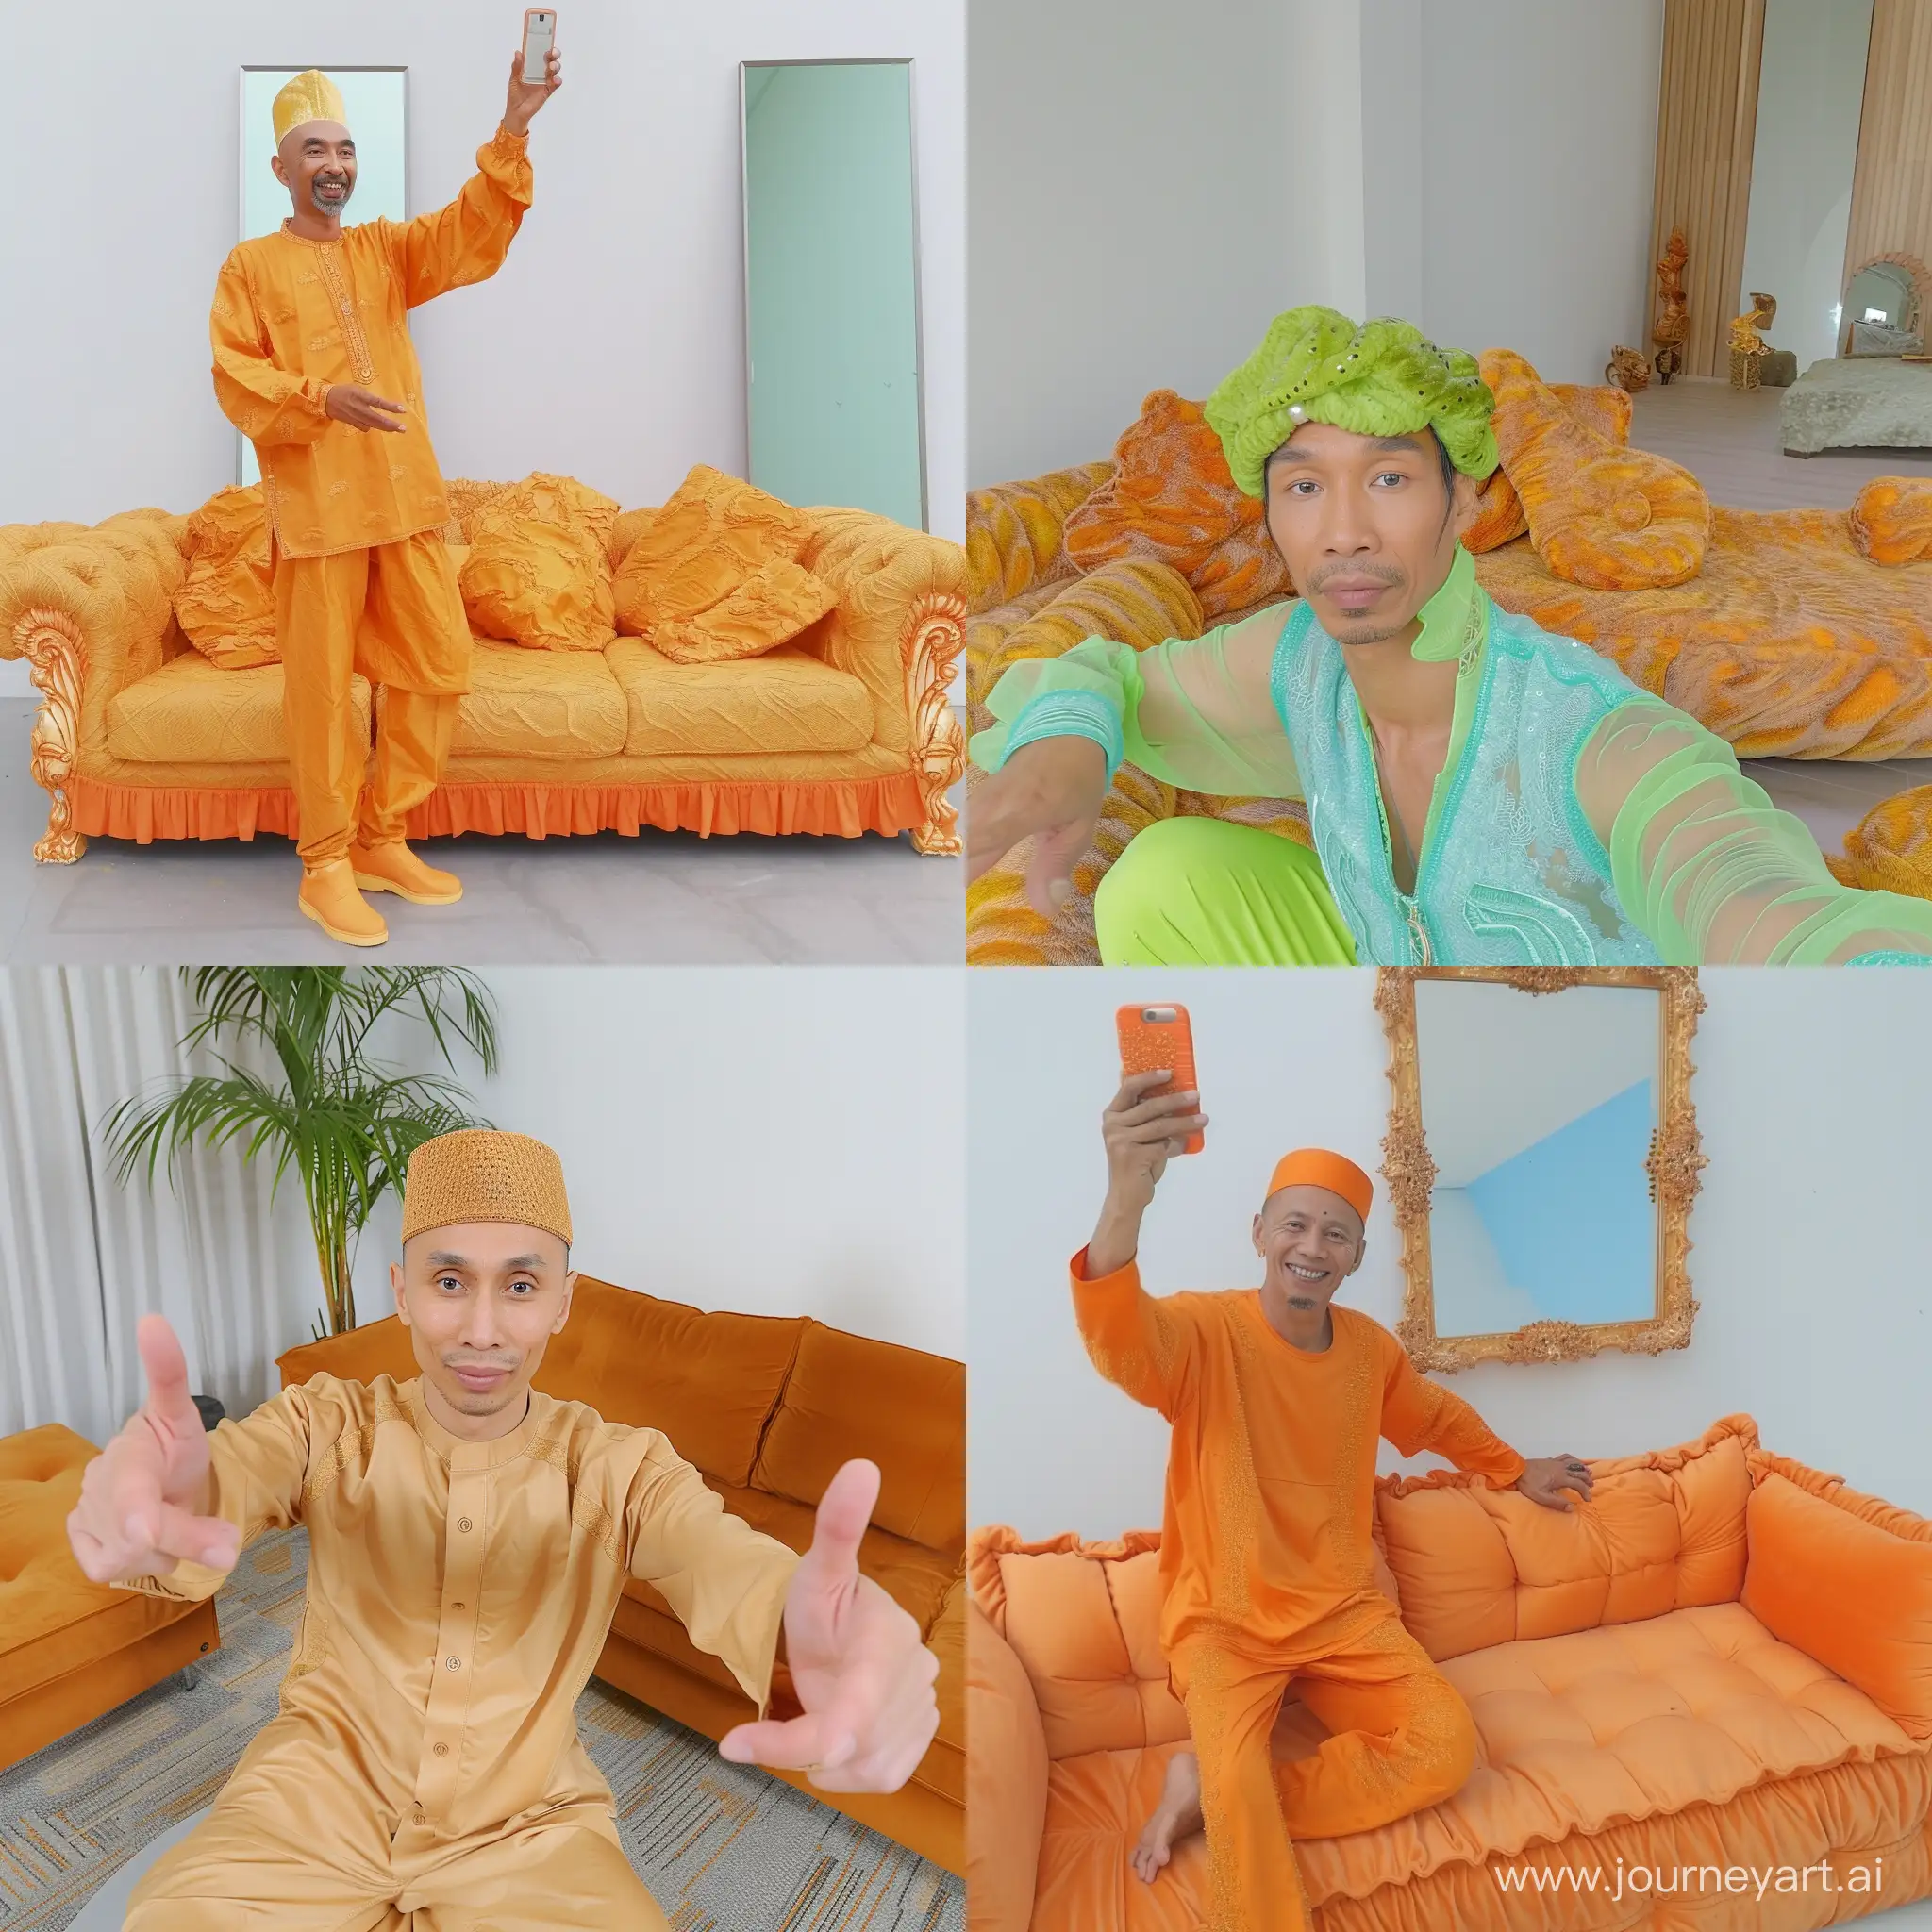 Stylish-Malay-Man-Taking-Selfie-Near-Sofa